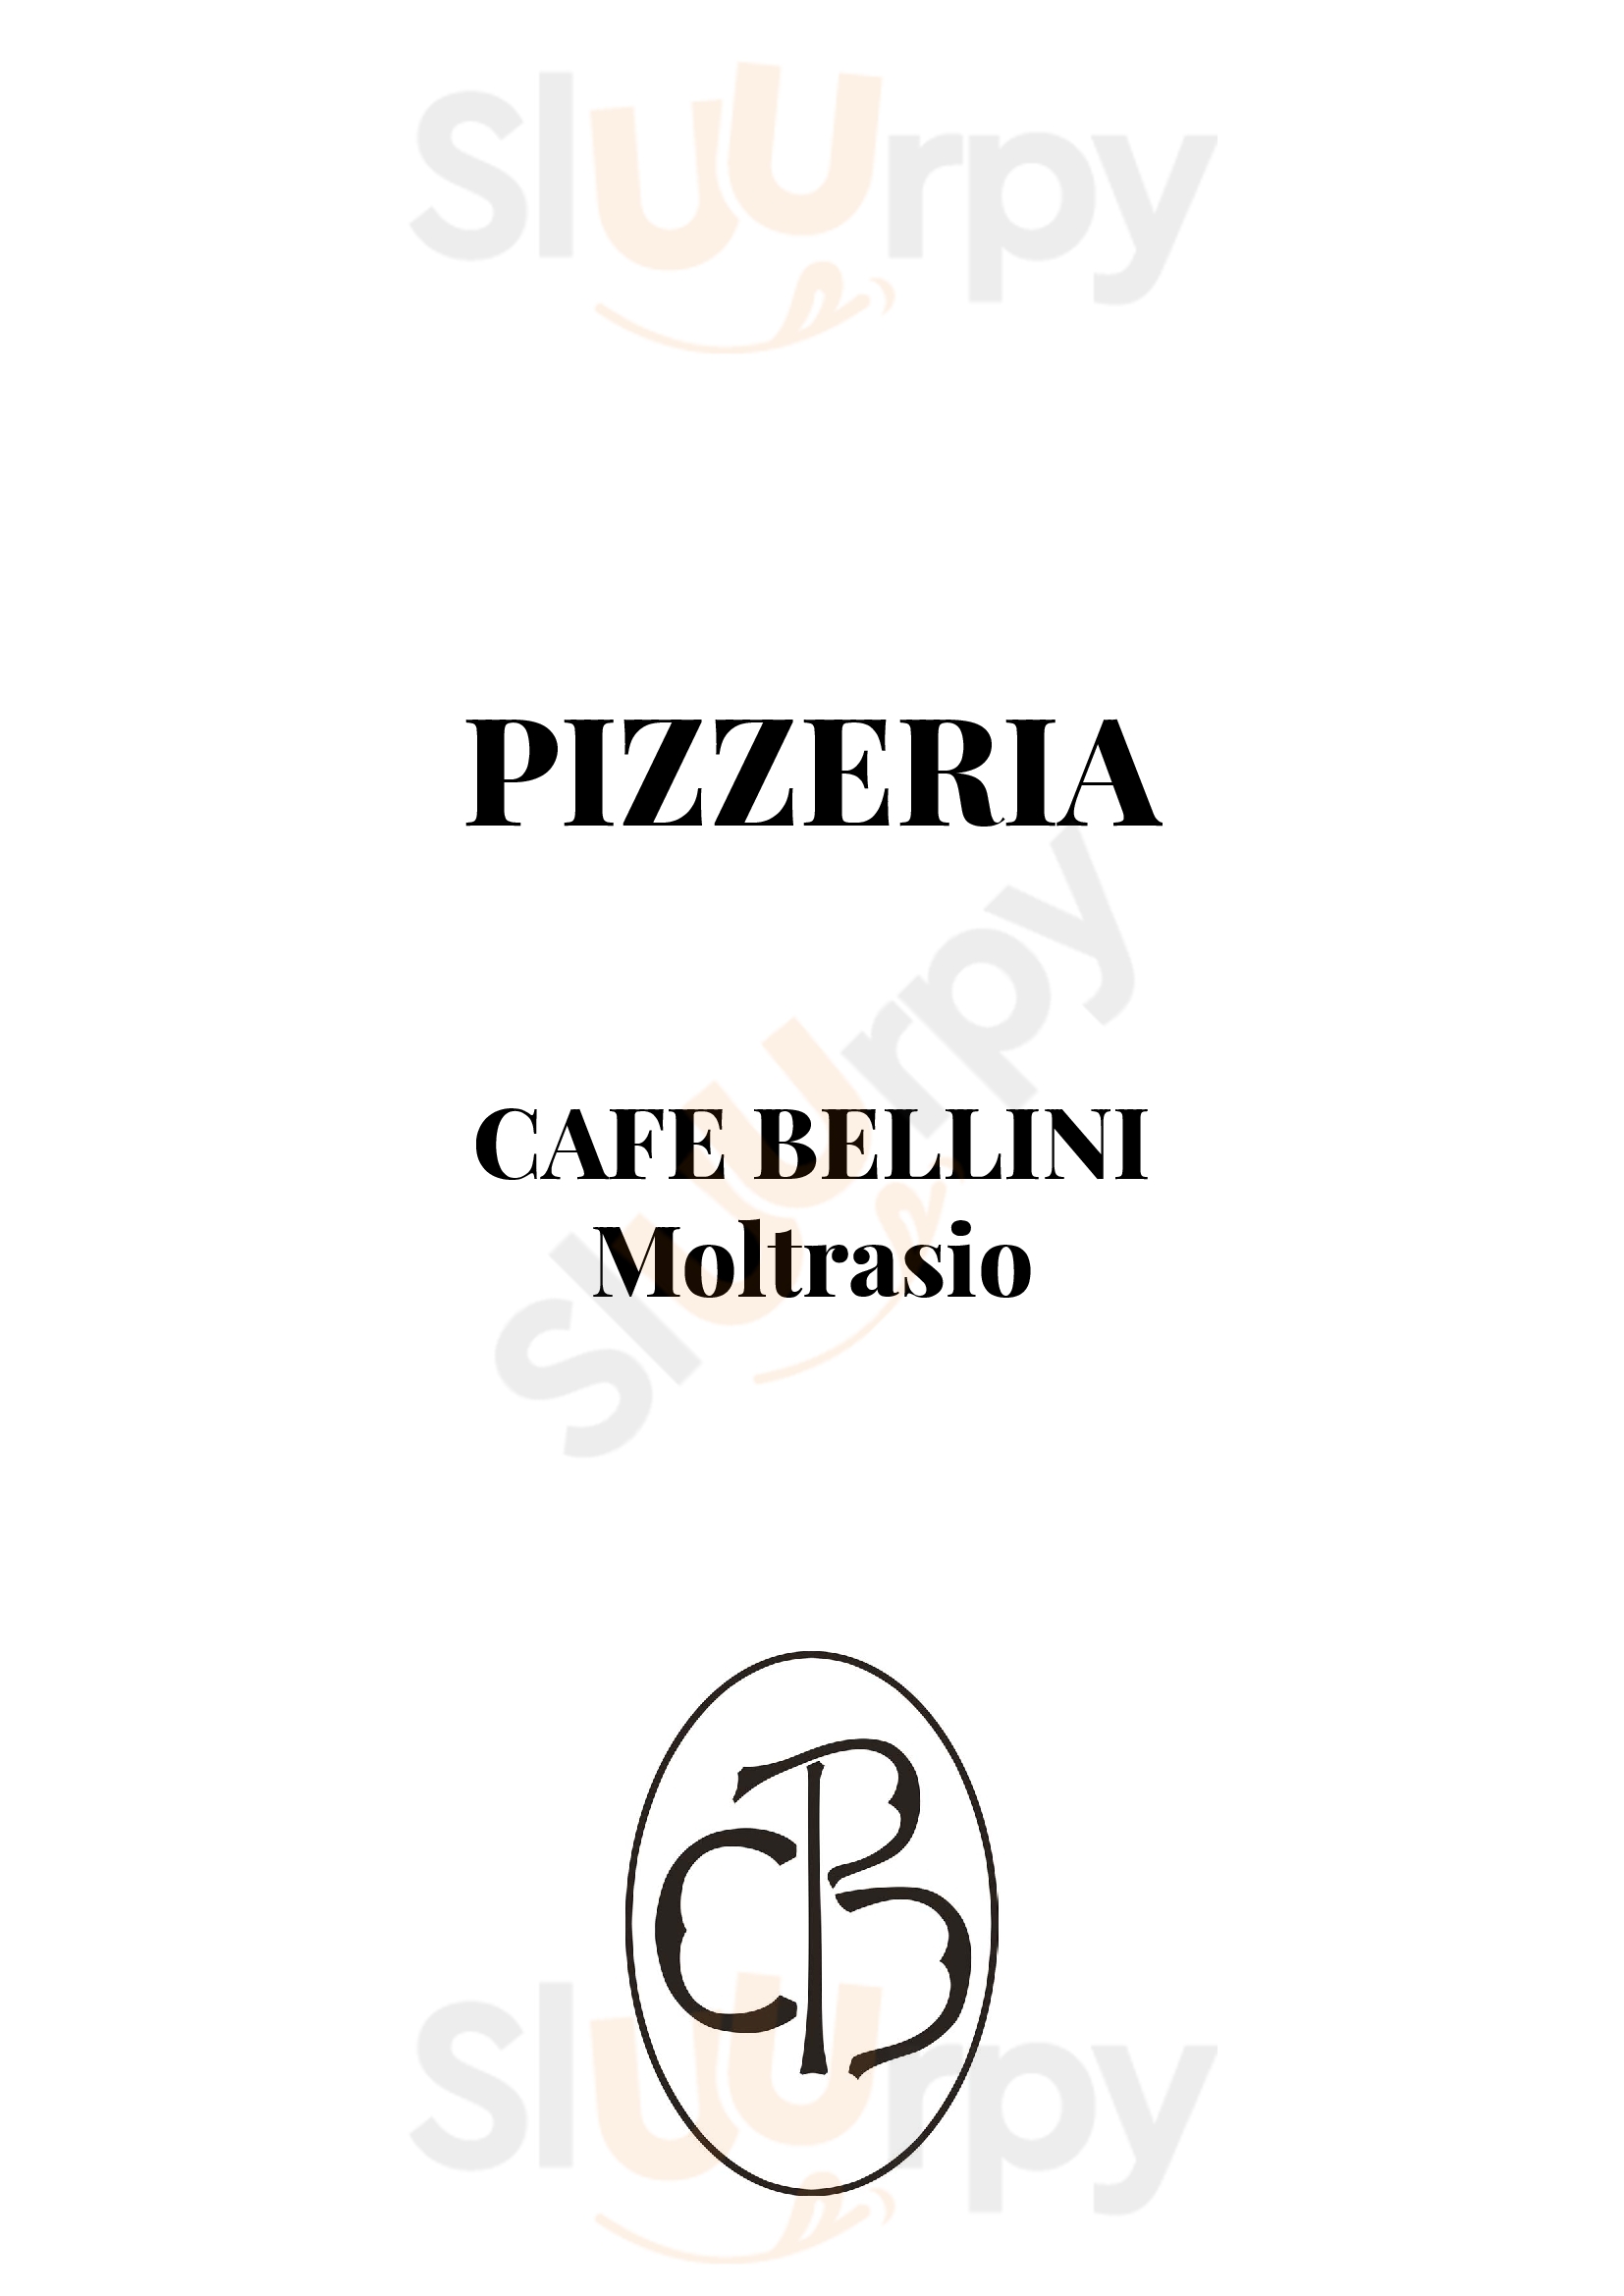 Cafe Bellini Moltrasio menù 1 pagina